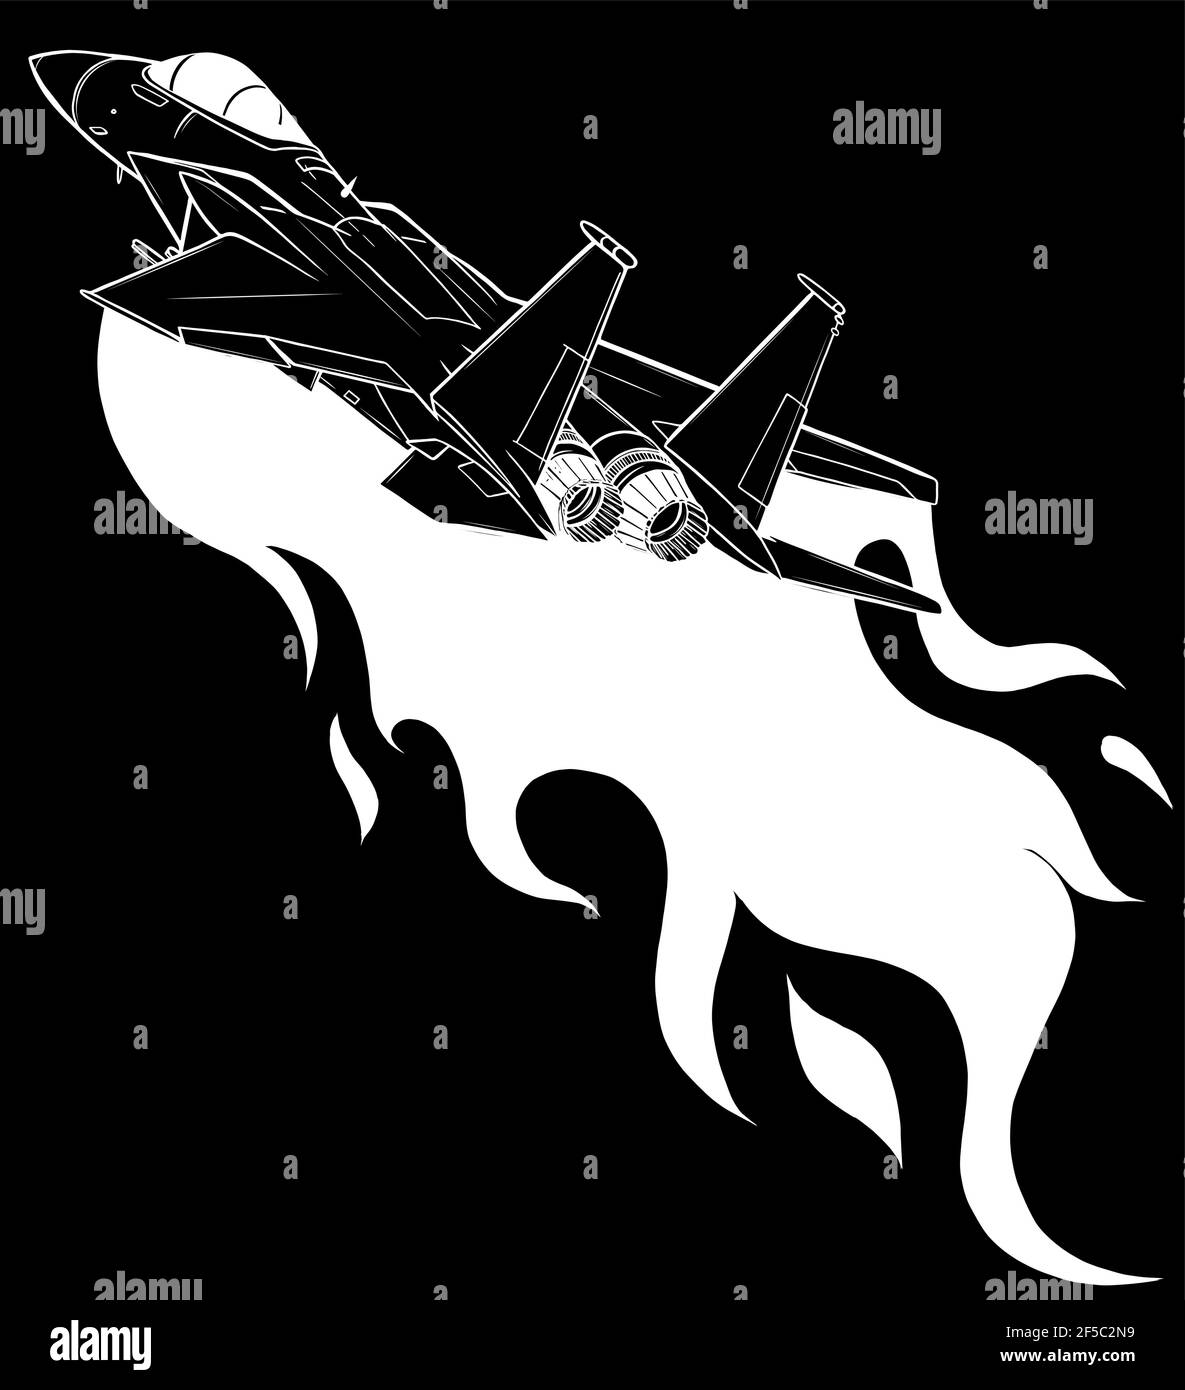 Silhouette blanche d'avions de chasse militaires sur fond noir Illustration de Vecteur